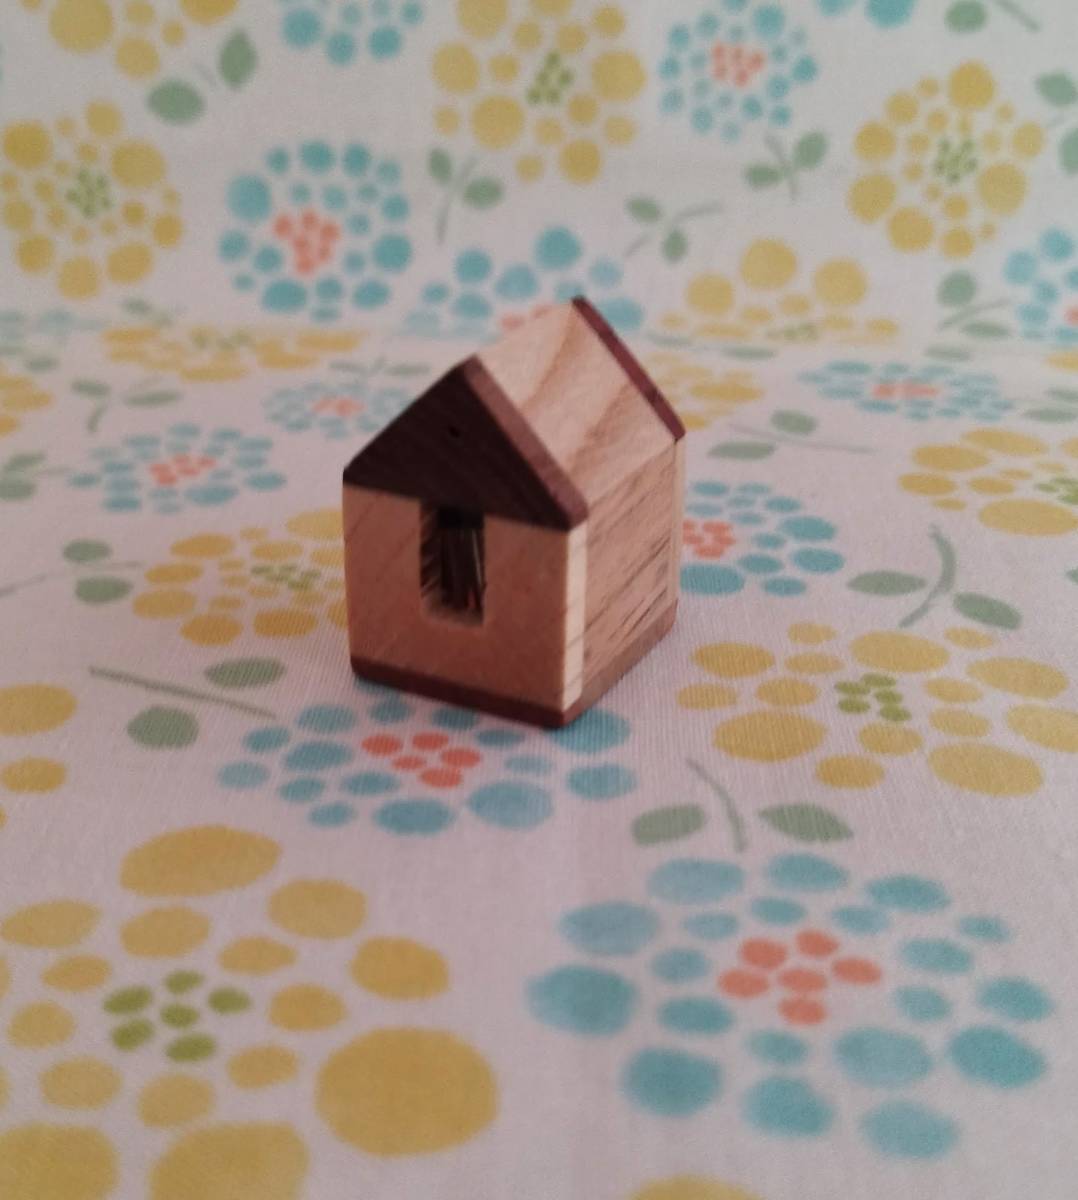 यह एक प्यारा लकड़ी का घर है। इसे एक बढ़ई ने हाथ से बनाया है।, हस्तनिर्मित वस्तुएं, आंतरिक भाग, विविध वस्तुएं, आभूषण, वस्तु